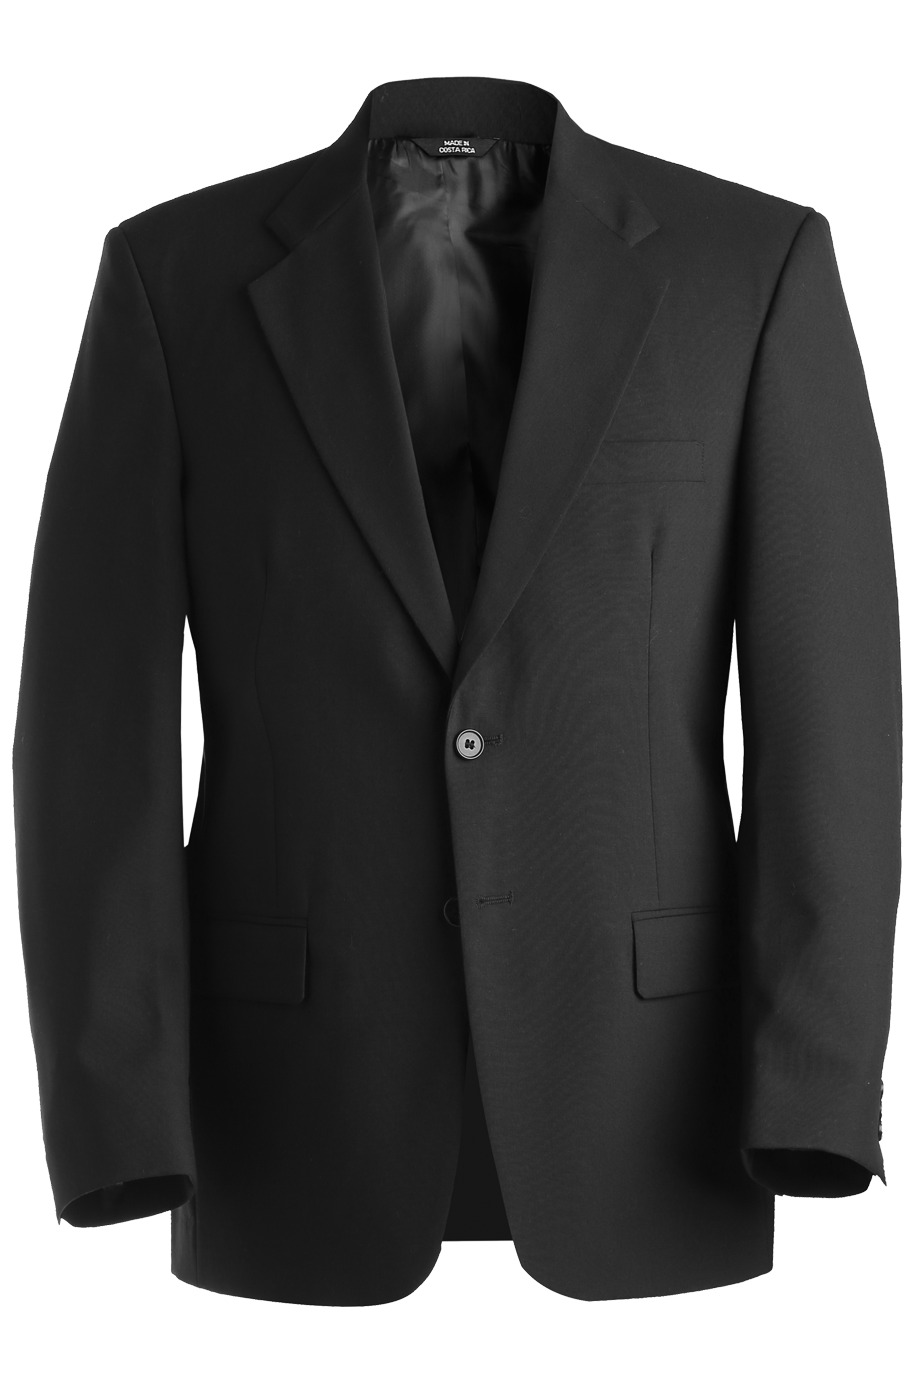 Edwards Garment 3680 - Suit Coat